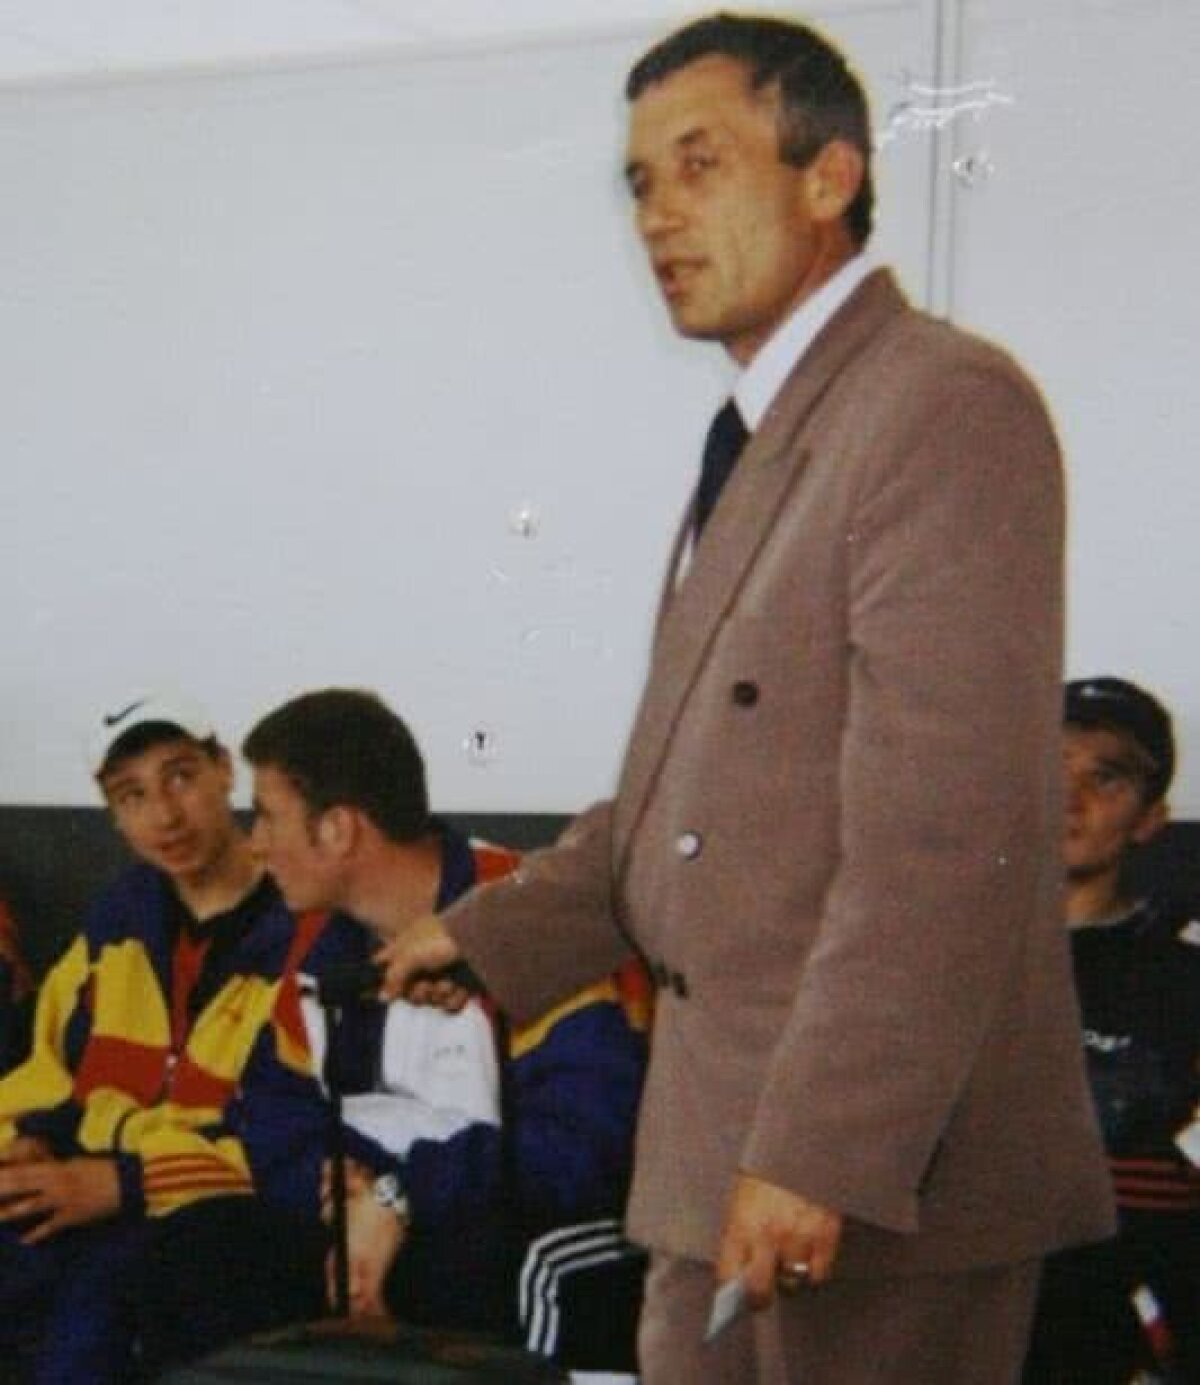 EXCLUSIV Constantin Foia, fostul antrenor al lui Bute, dă verdictul: „Doroftei a fost mai mare decât «Mușchiulete»”